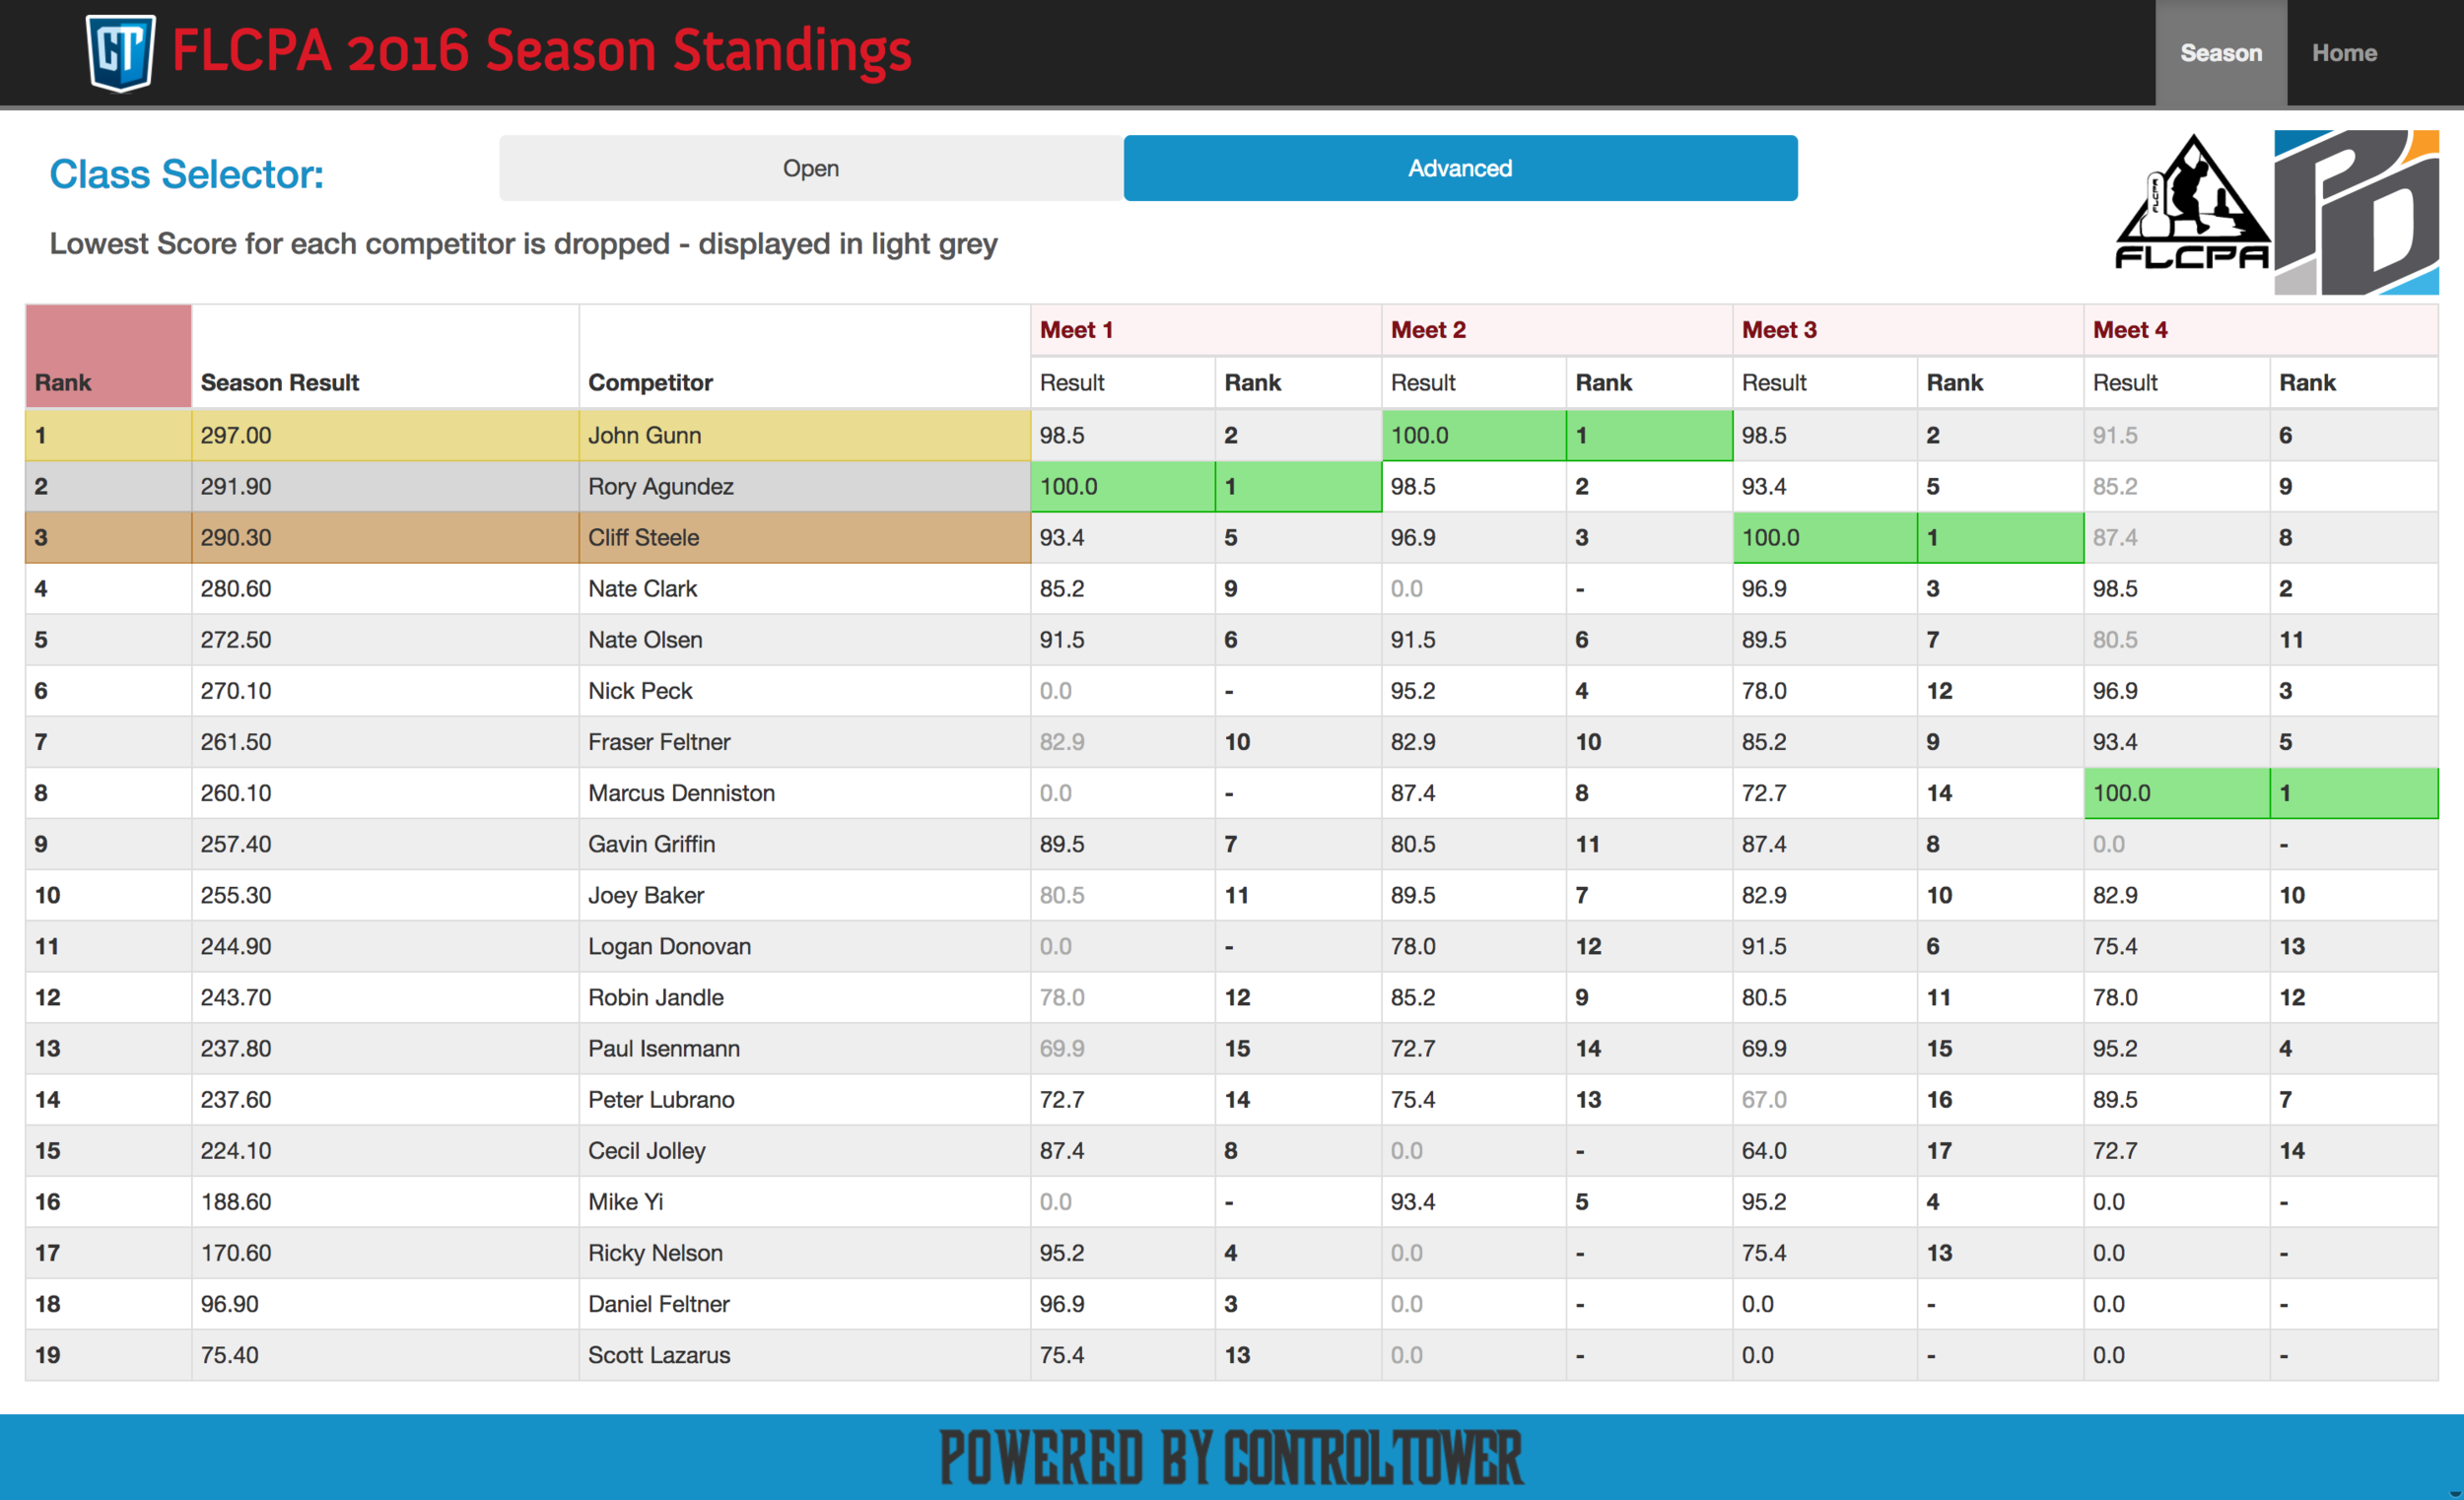 Season Standings